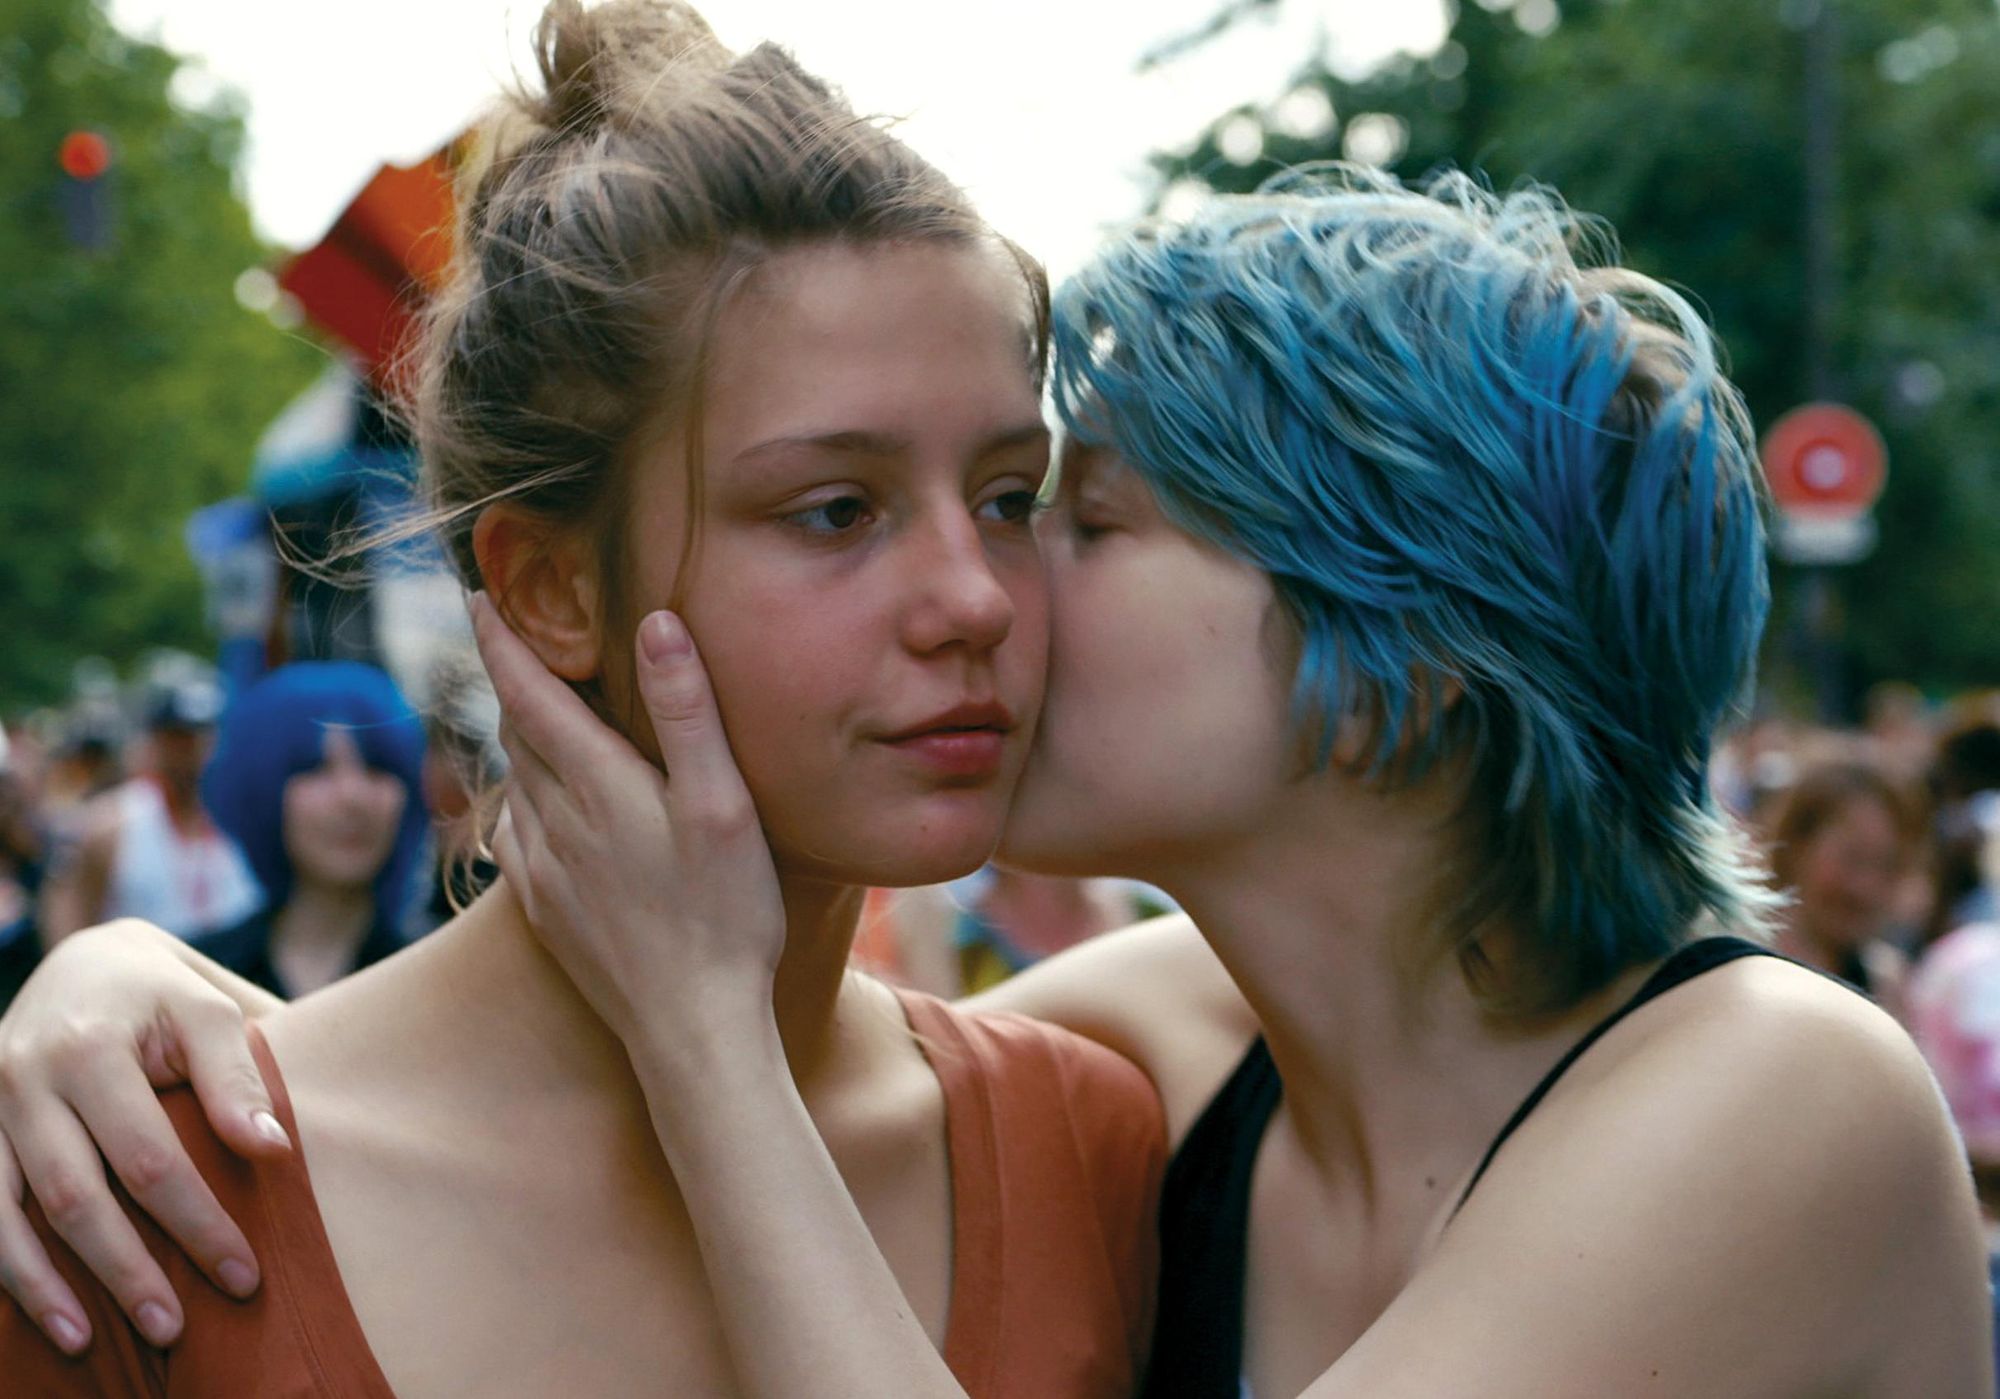 Lesbian films need female directors pic